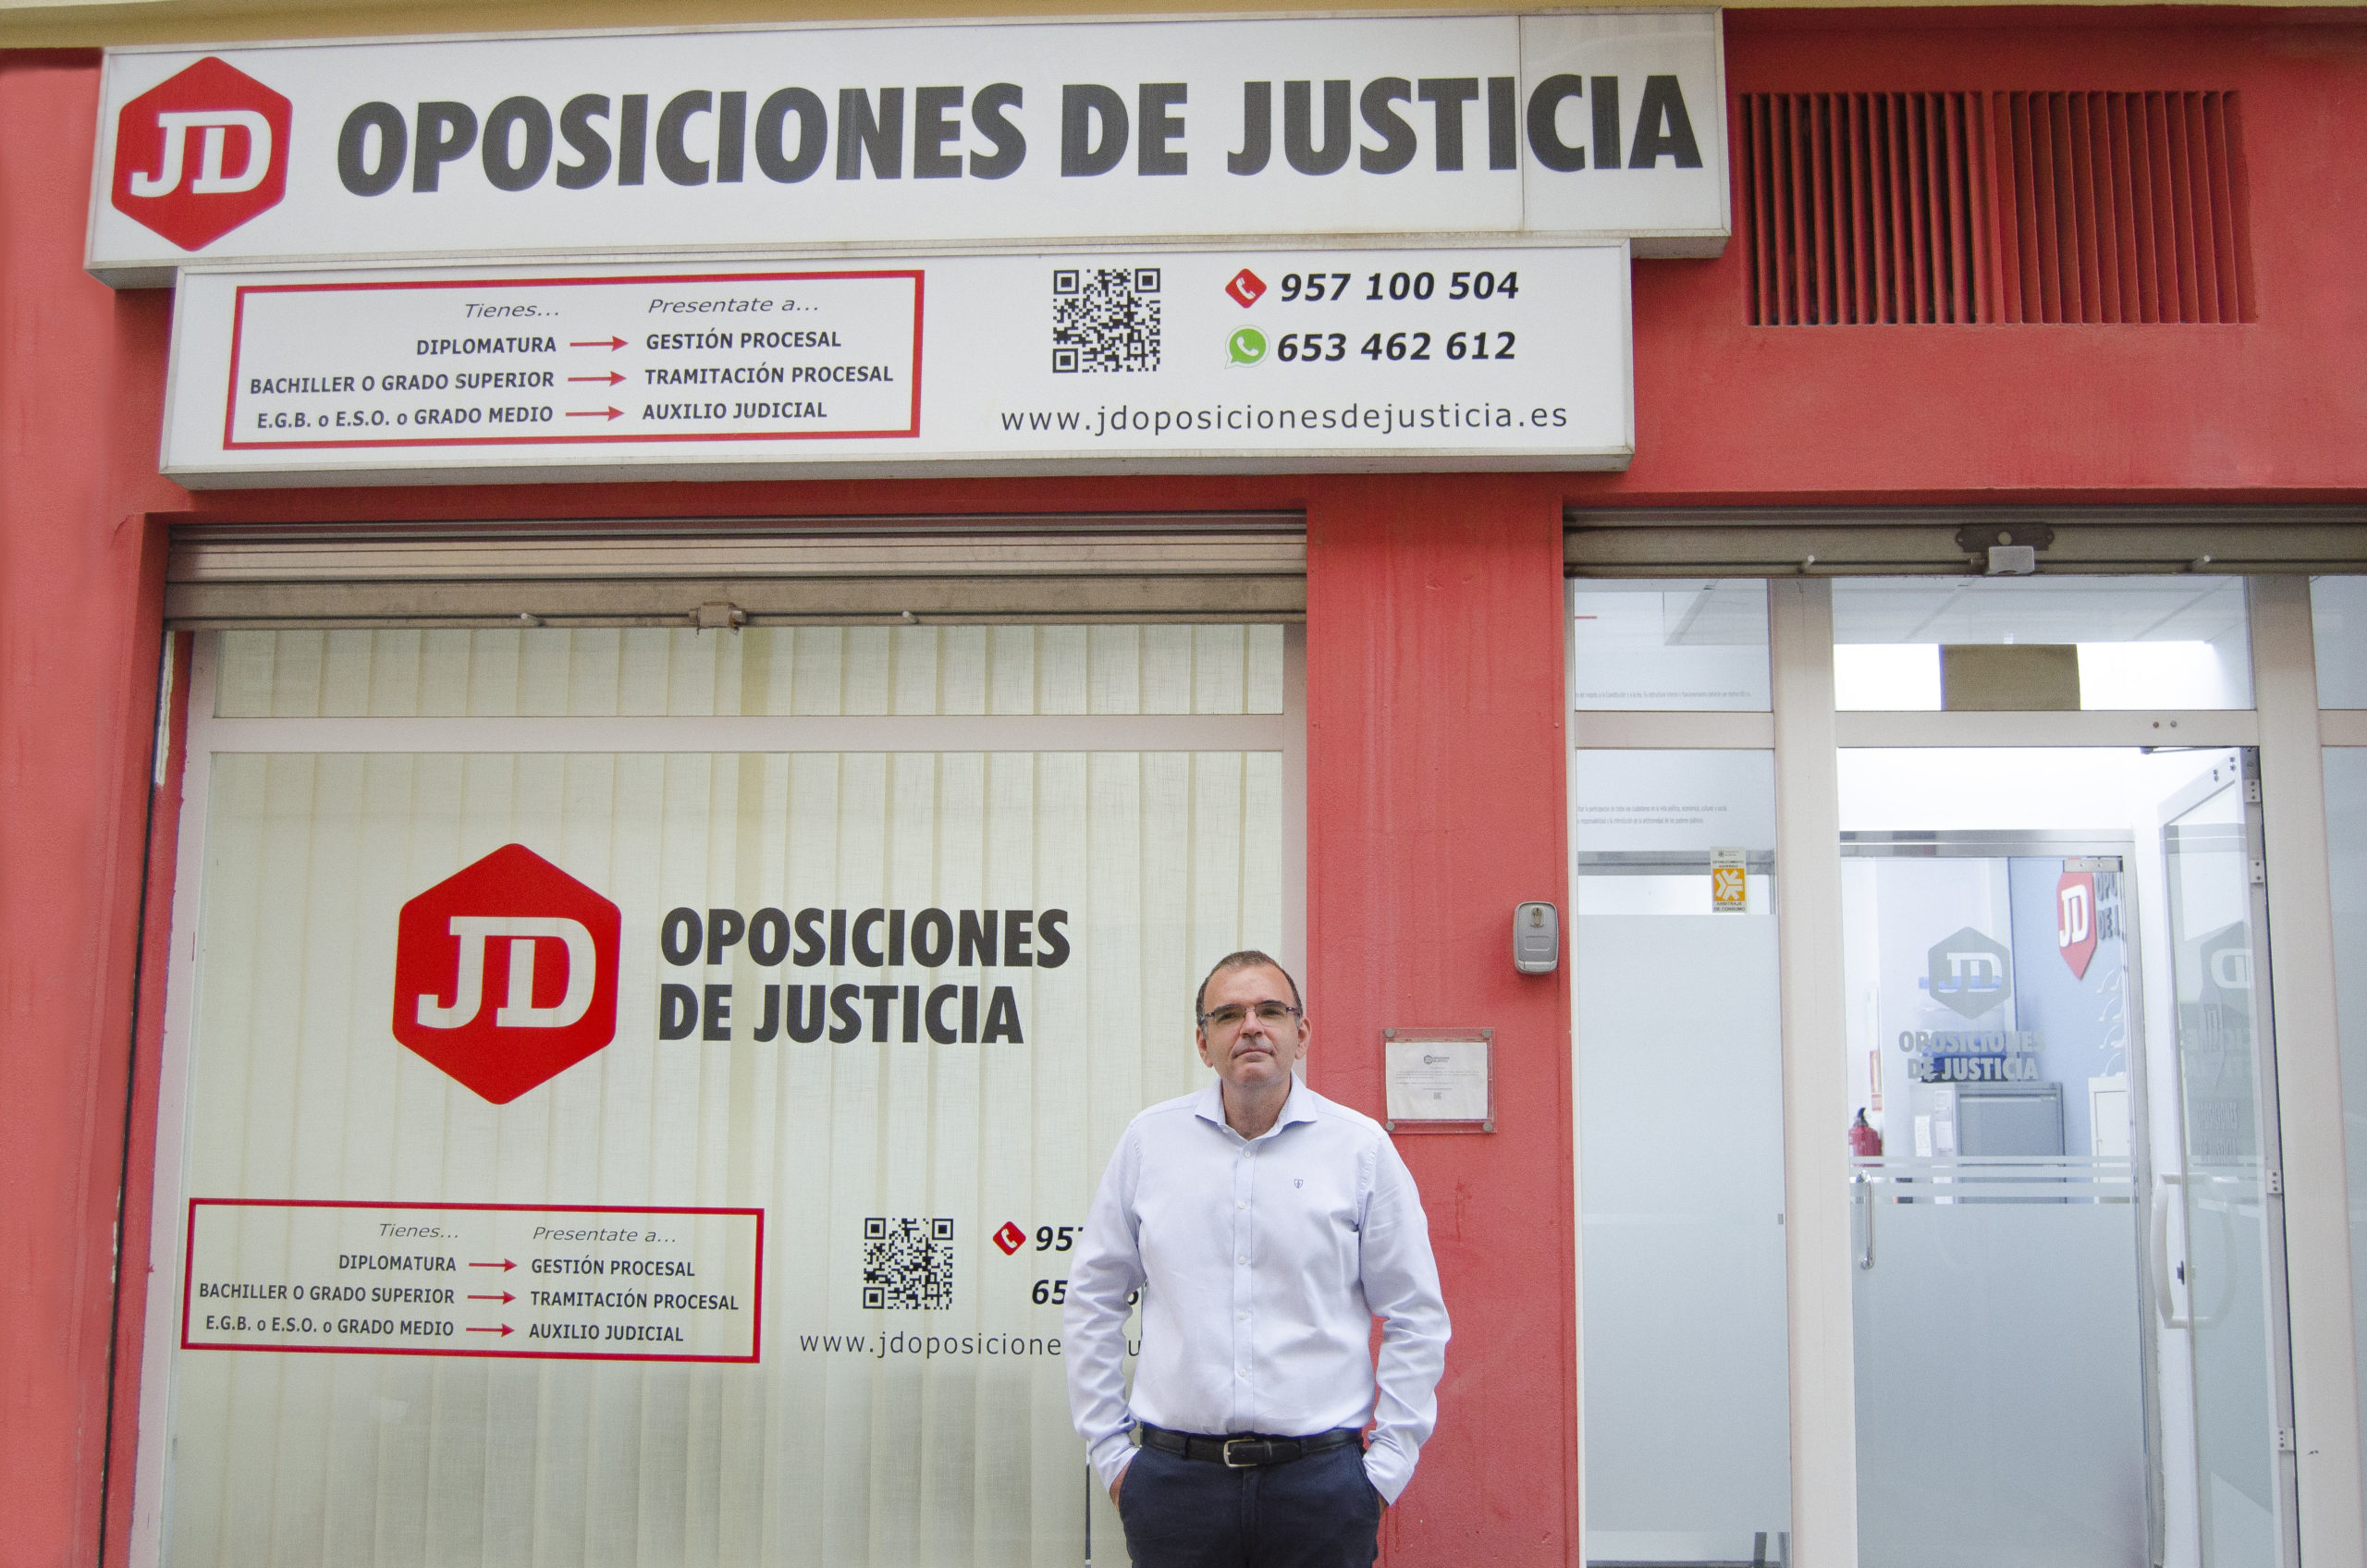 Juan David Granados, Director de formación de JD Oposiciones de Justicia